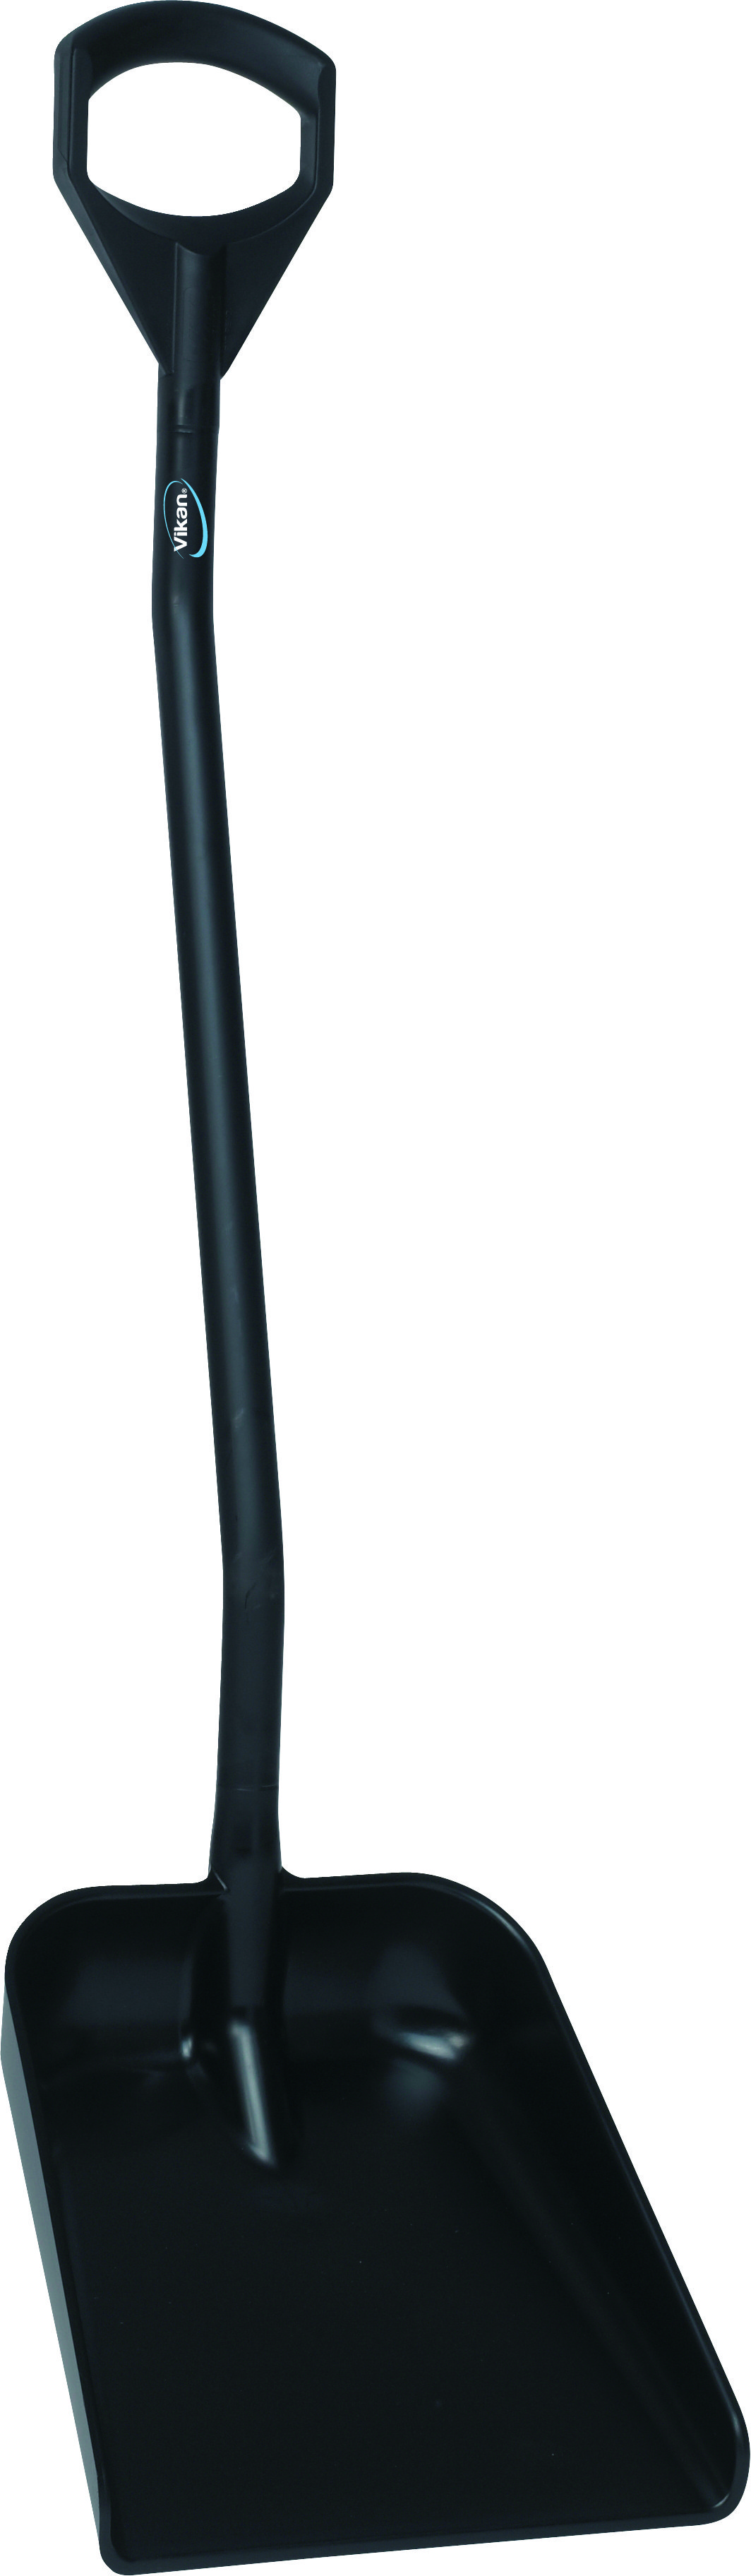 Эргономичная большая лопата с длинной ручкой,1310 мм, черная